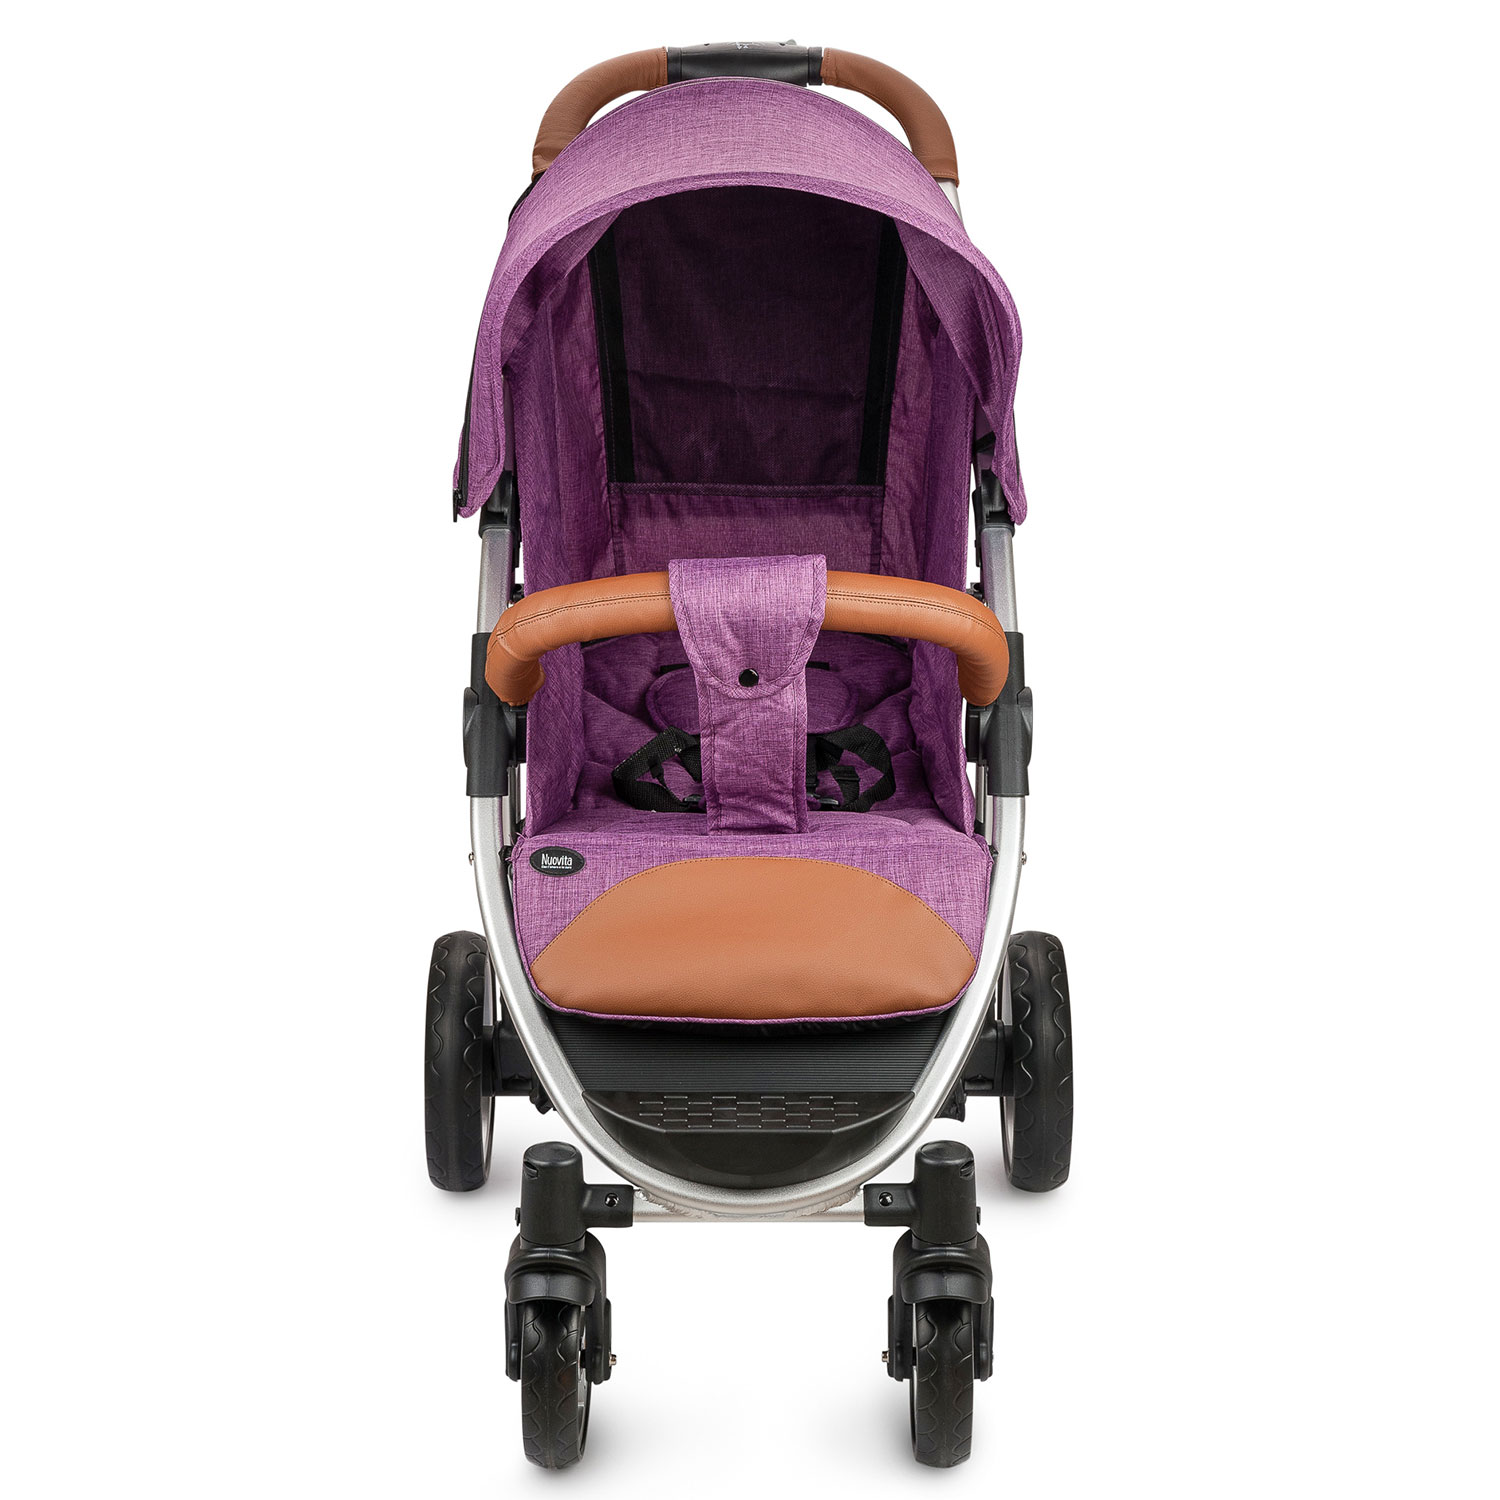 Прогулочная коляска Nuovita Corso, цвет Viola, Argento / Фиолетовый, Серебристый  